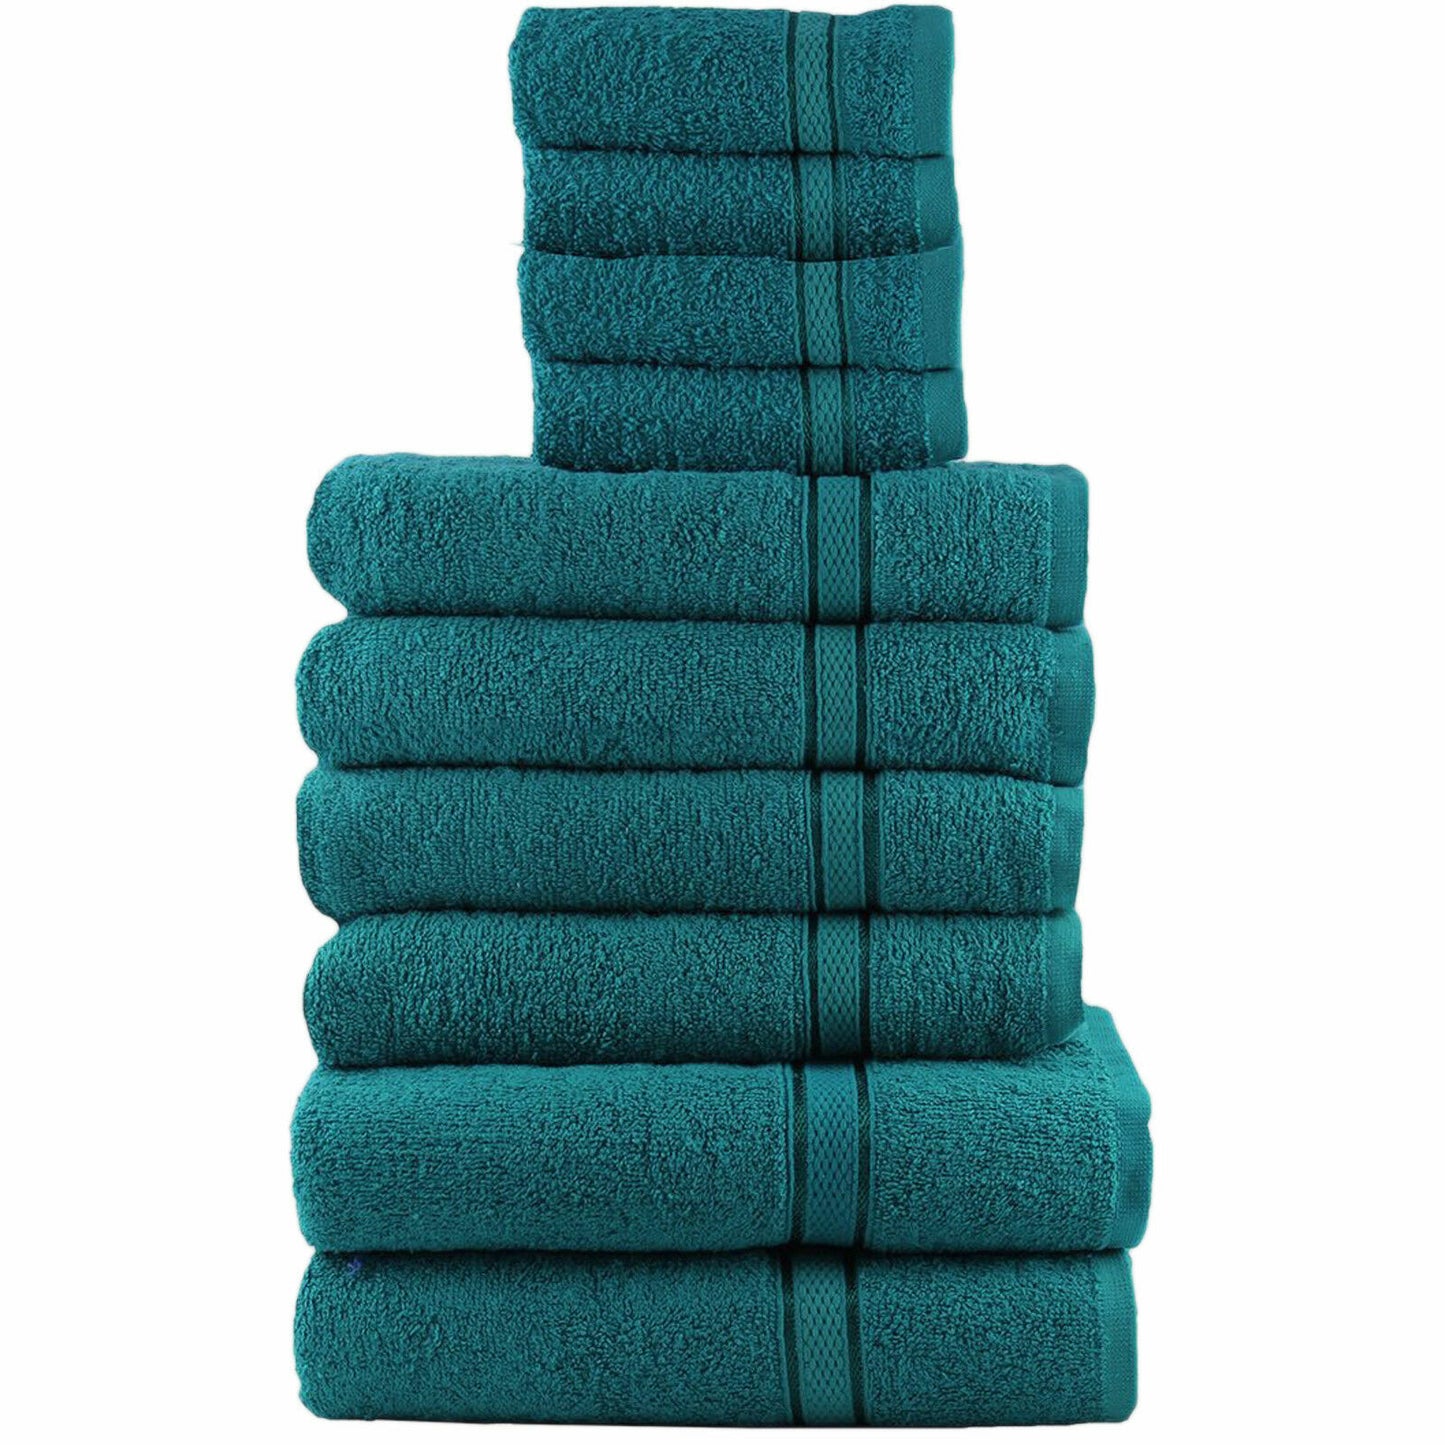 10 PIECE TOWEL BALE SET 100% LUXURY SOFT EGYPTIAN COTTON FACE HAND BATH TOWELS